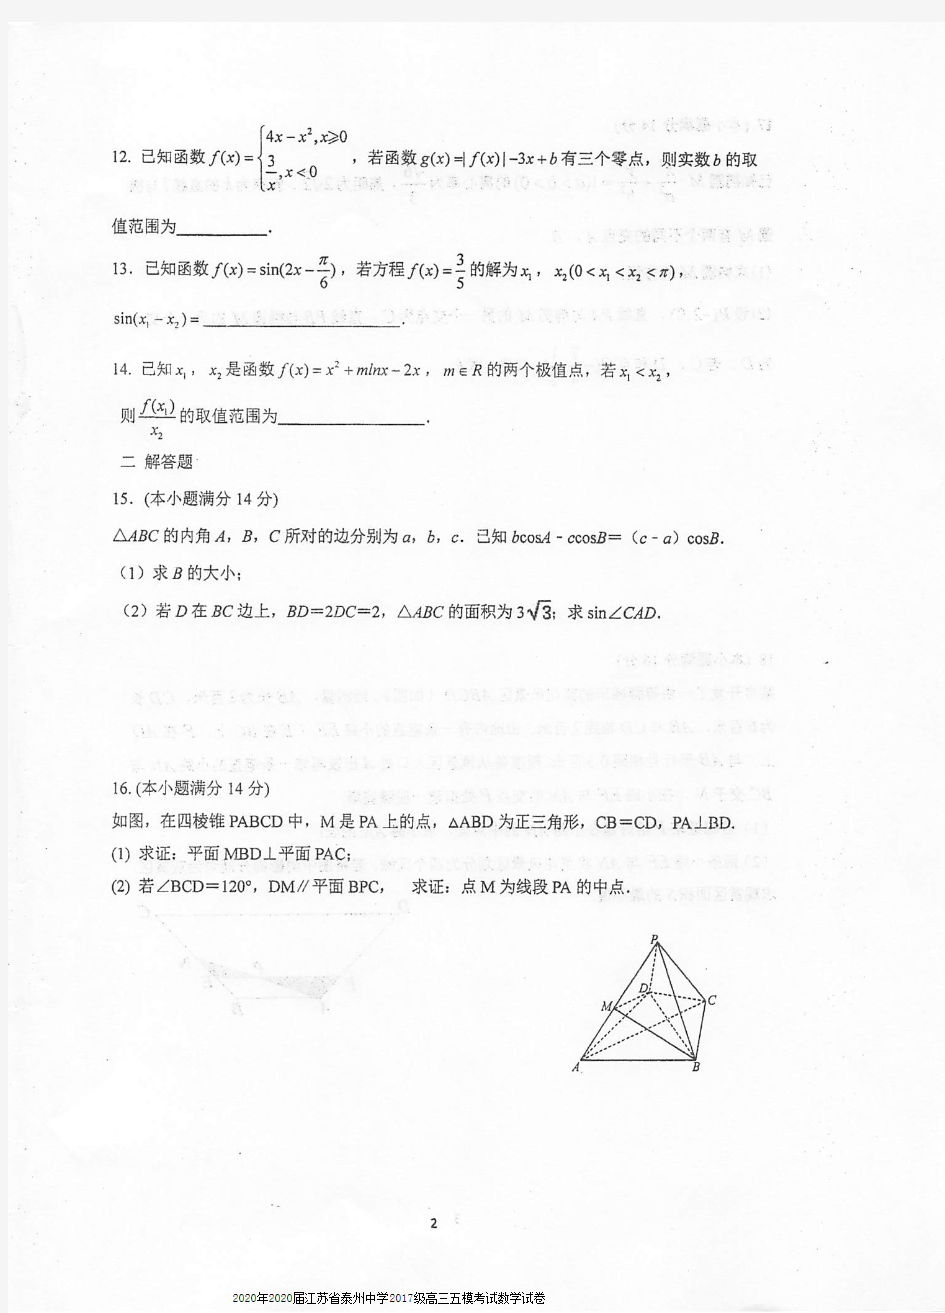 2020年2020届江苏省泰州中学2017级高三五模考试数学试卷及答案(含附加题) 